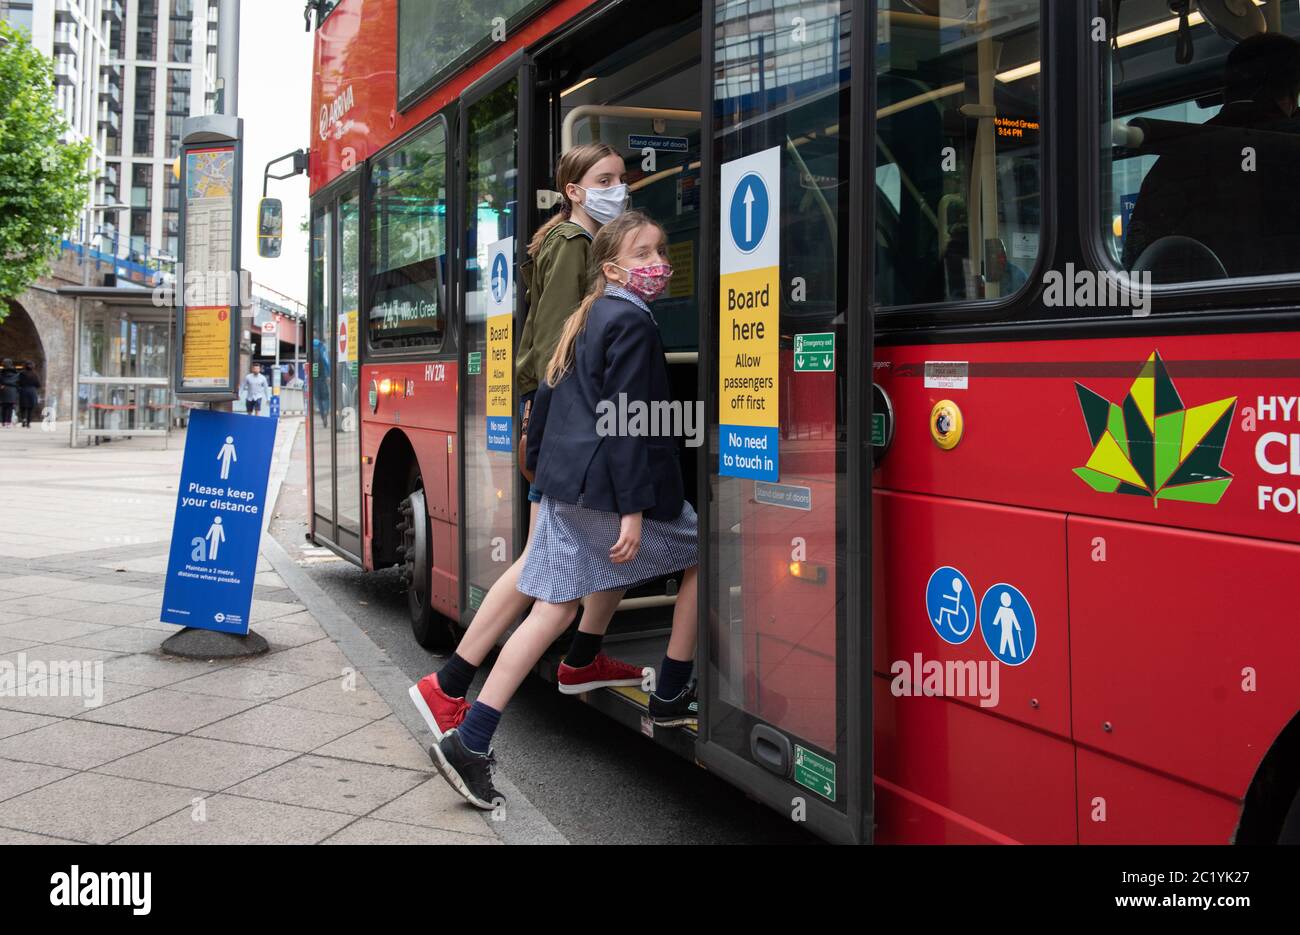 Les enfants portant un masque sur les transports en commun. Autobus Waterloo. Londres, Royaume-Uni. 7 juin 2020. FORMULAIRES DE CONSENTEMENT SIGNÉS POUR TOUTES LES PERSONNES EN PHOTO Banque D'Images